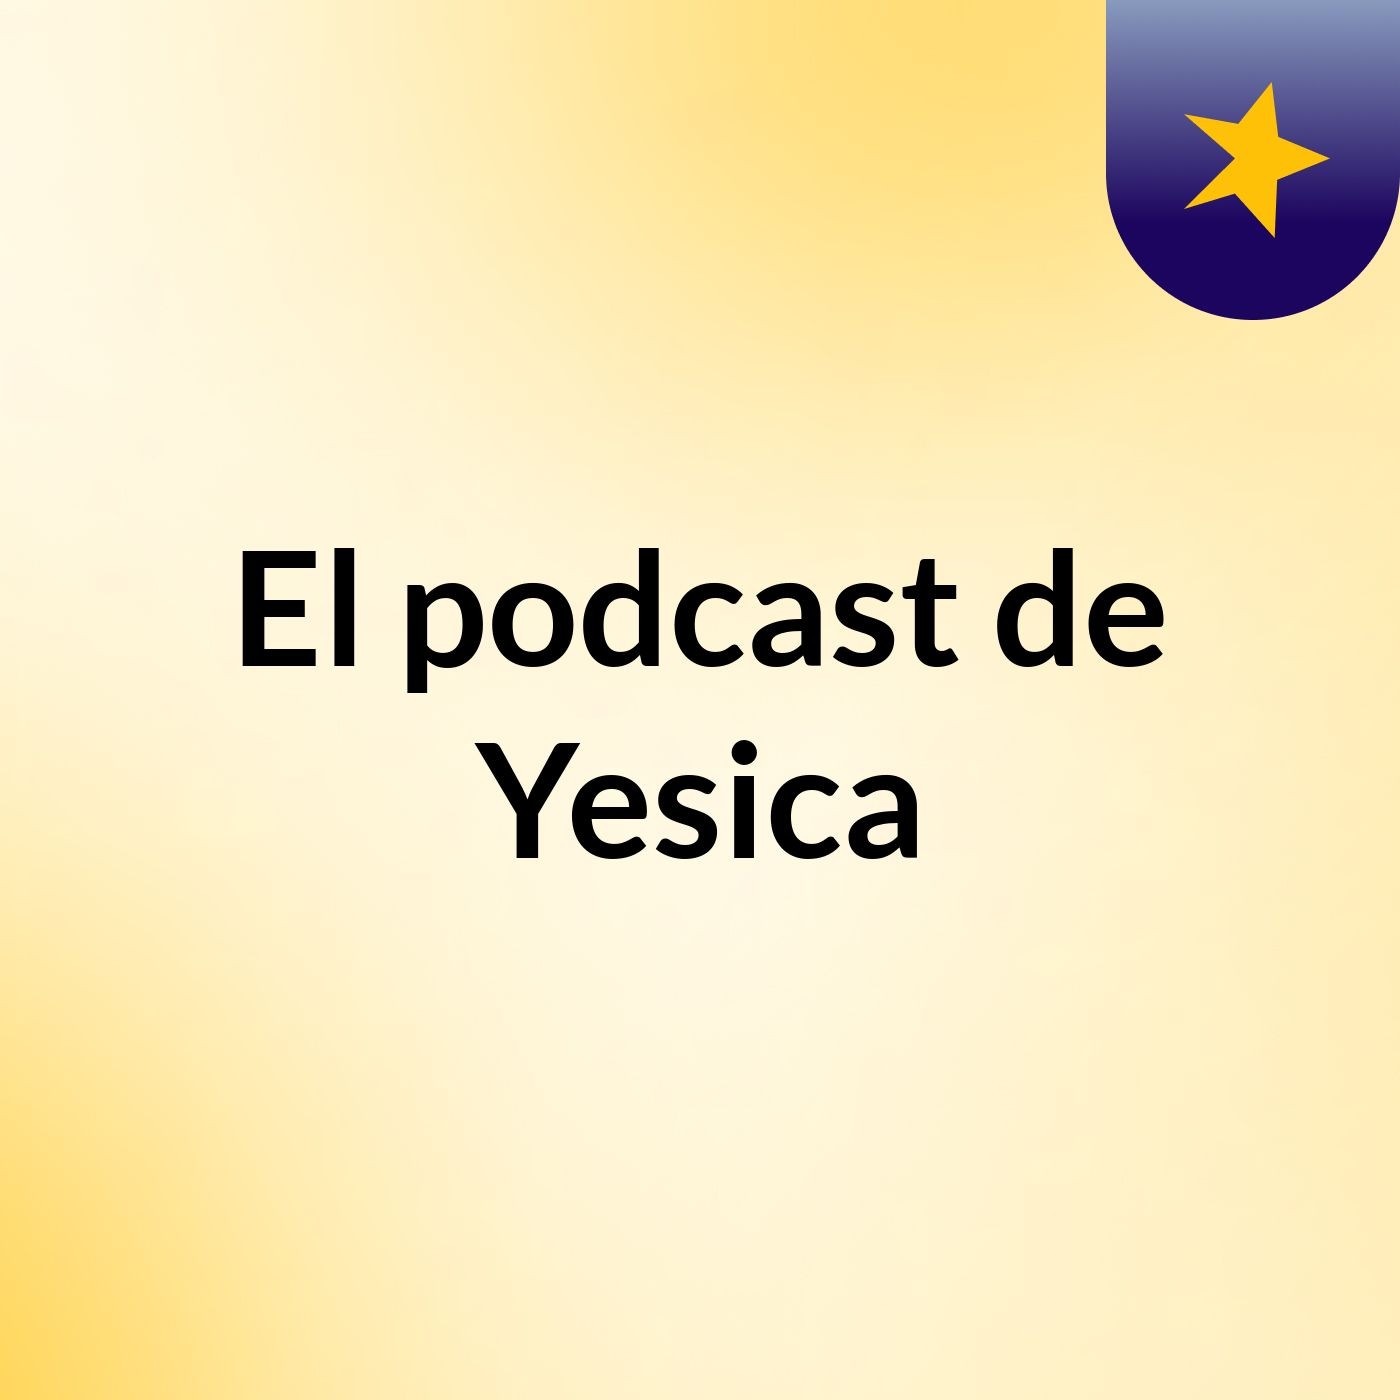 El podcast de Yesica